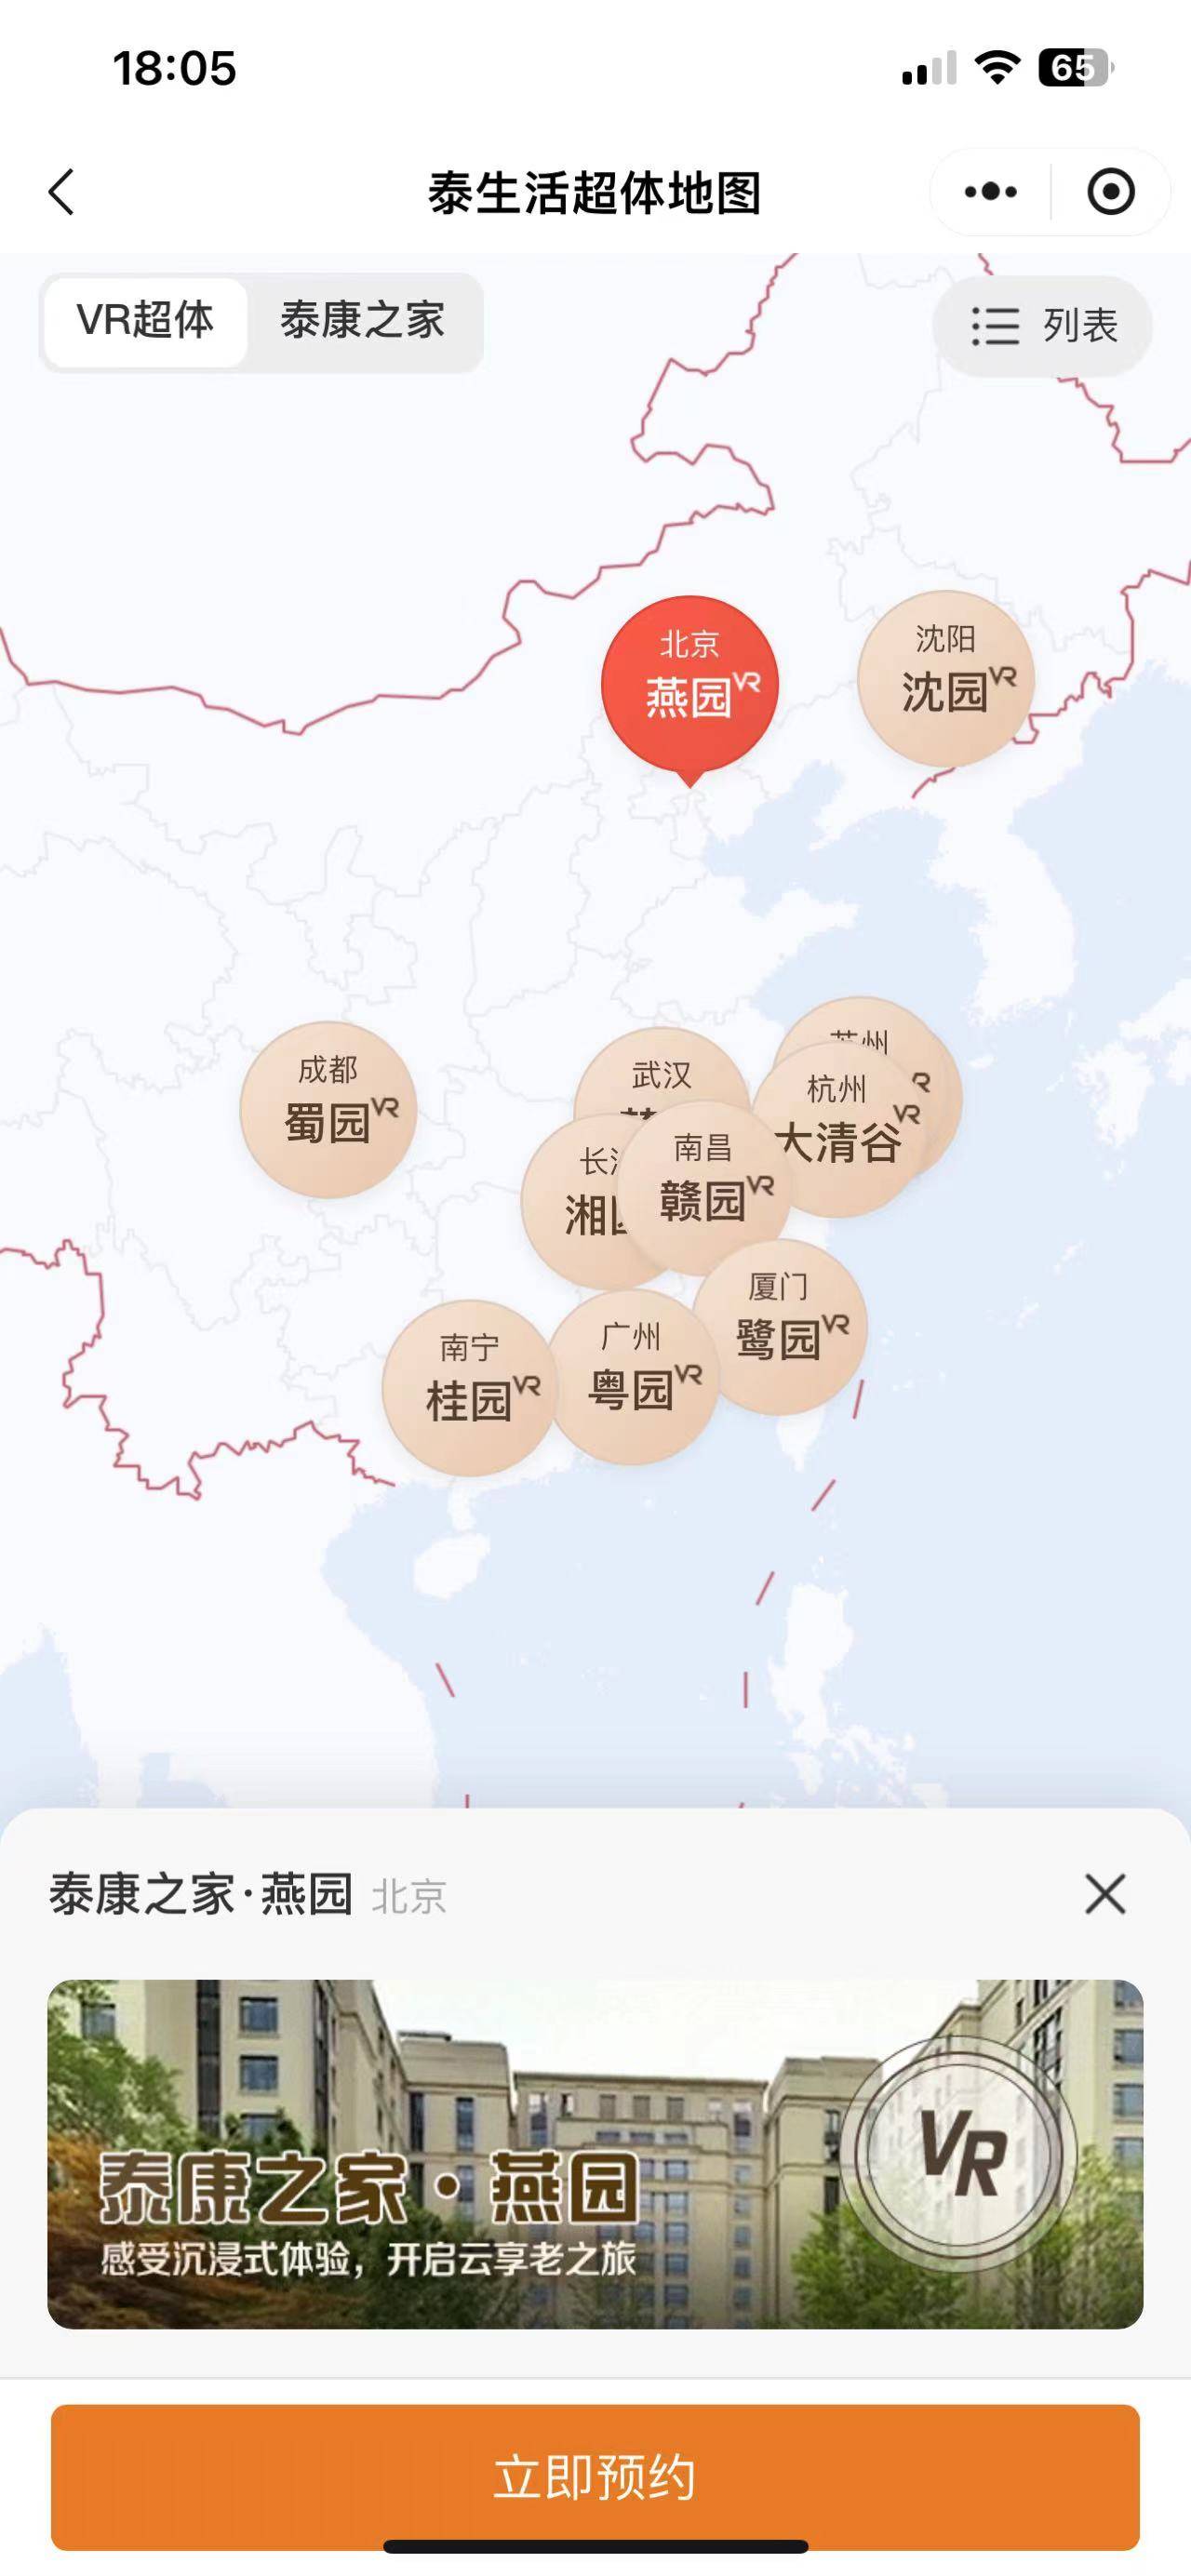 中国国际电视台🌸新澳门一肖一码精准资料公开🌸|上海市互联网业联合会网络和数据安全委员会成立